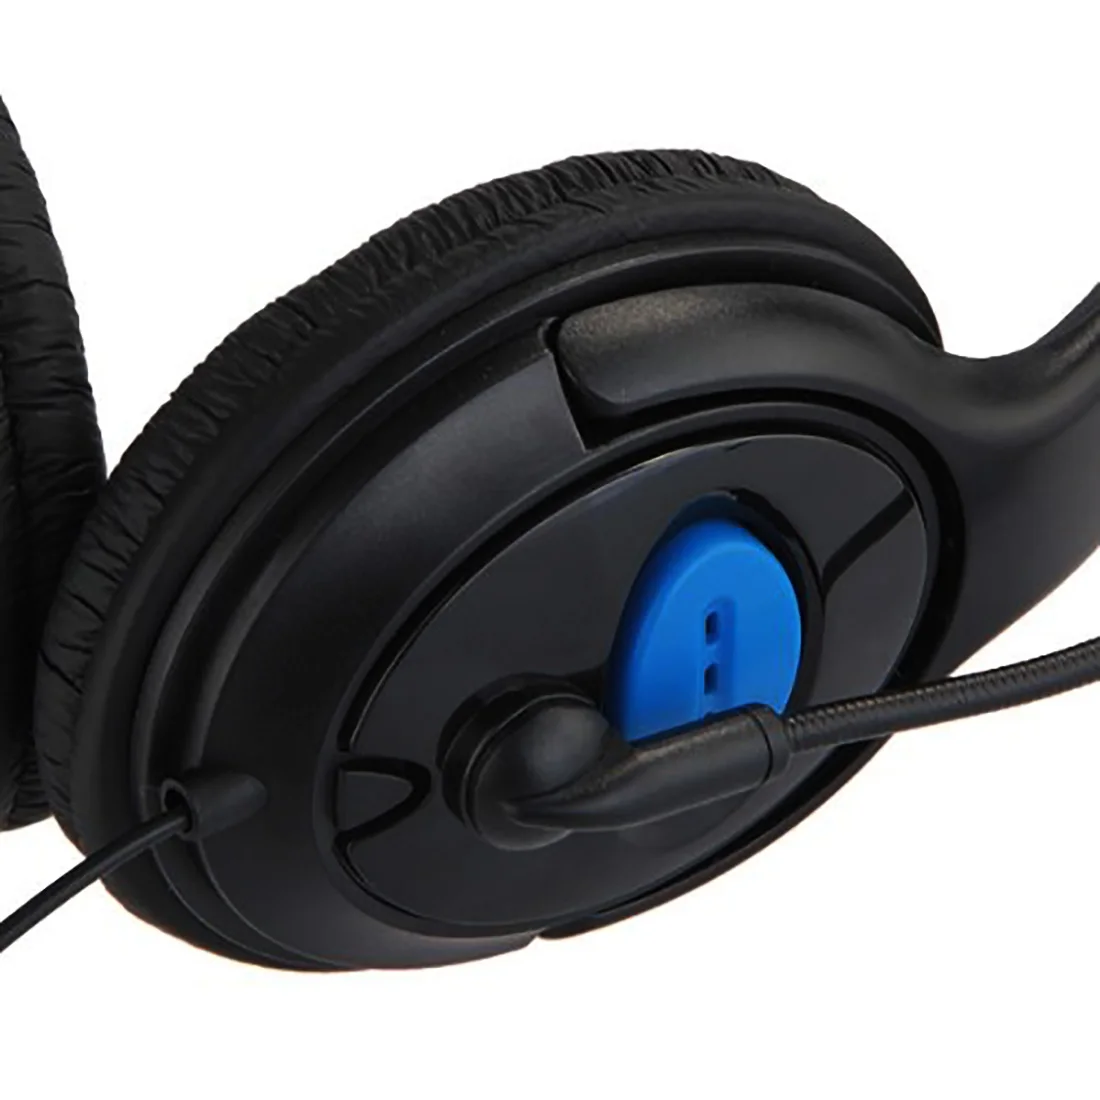 Marsnaska двойной большой ухо проводной игровой чат микрофон для телефонной гарнитуры для sony Playstation 4 PS4 черный